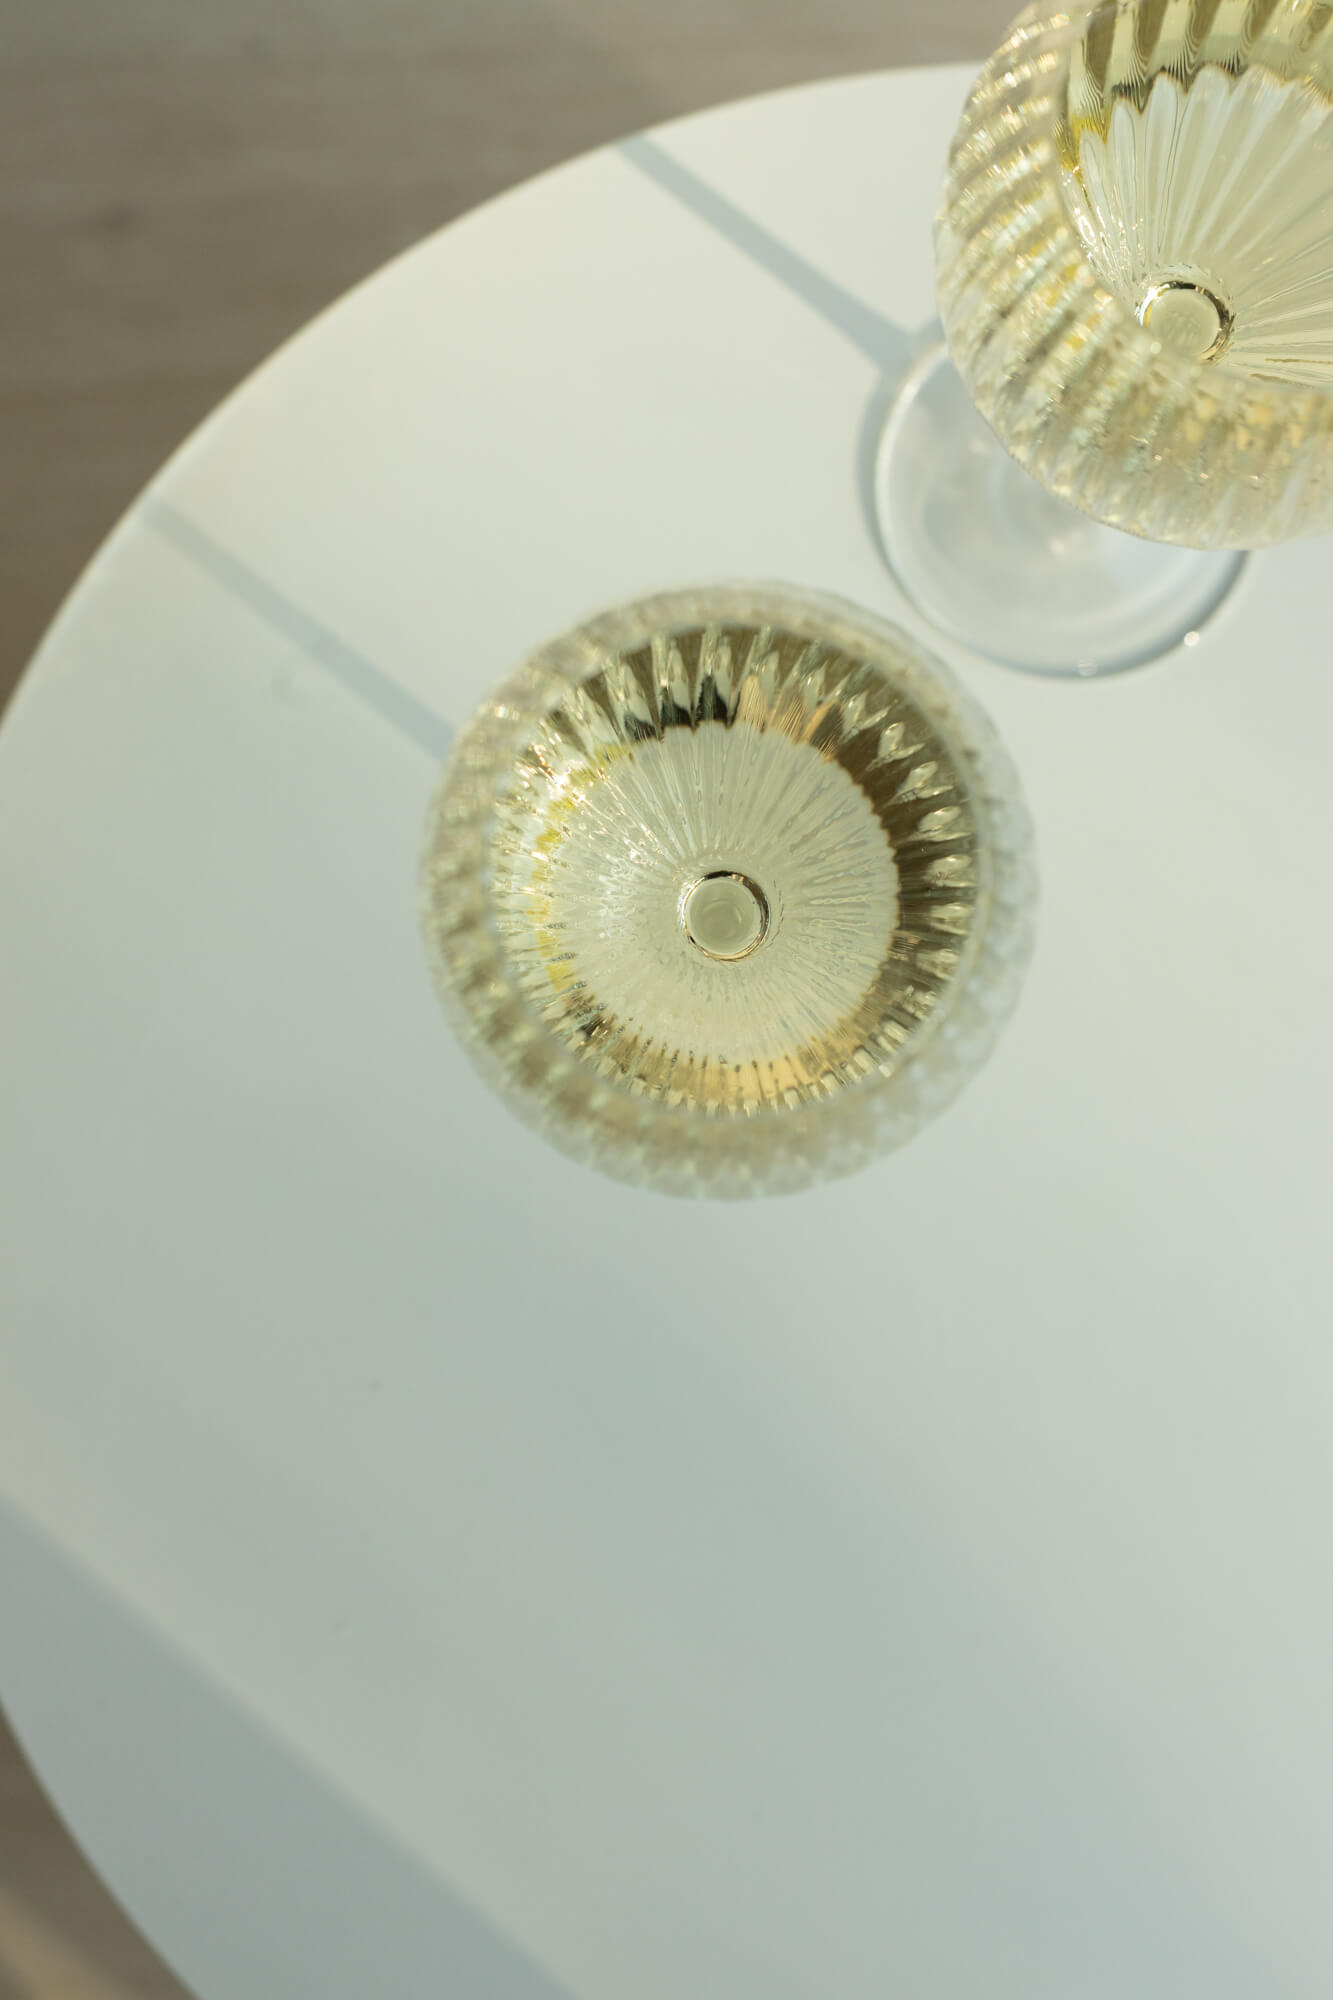 Kadr z góry na dwa szklane, bezbarwne kieliszki do białego wina, stojące na białym stoliku.